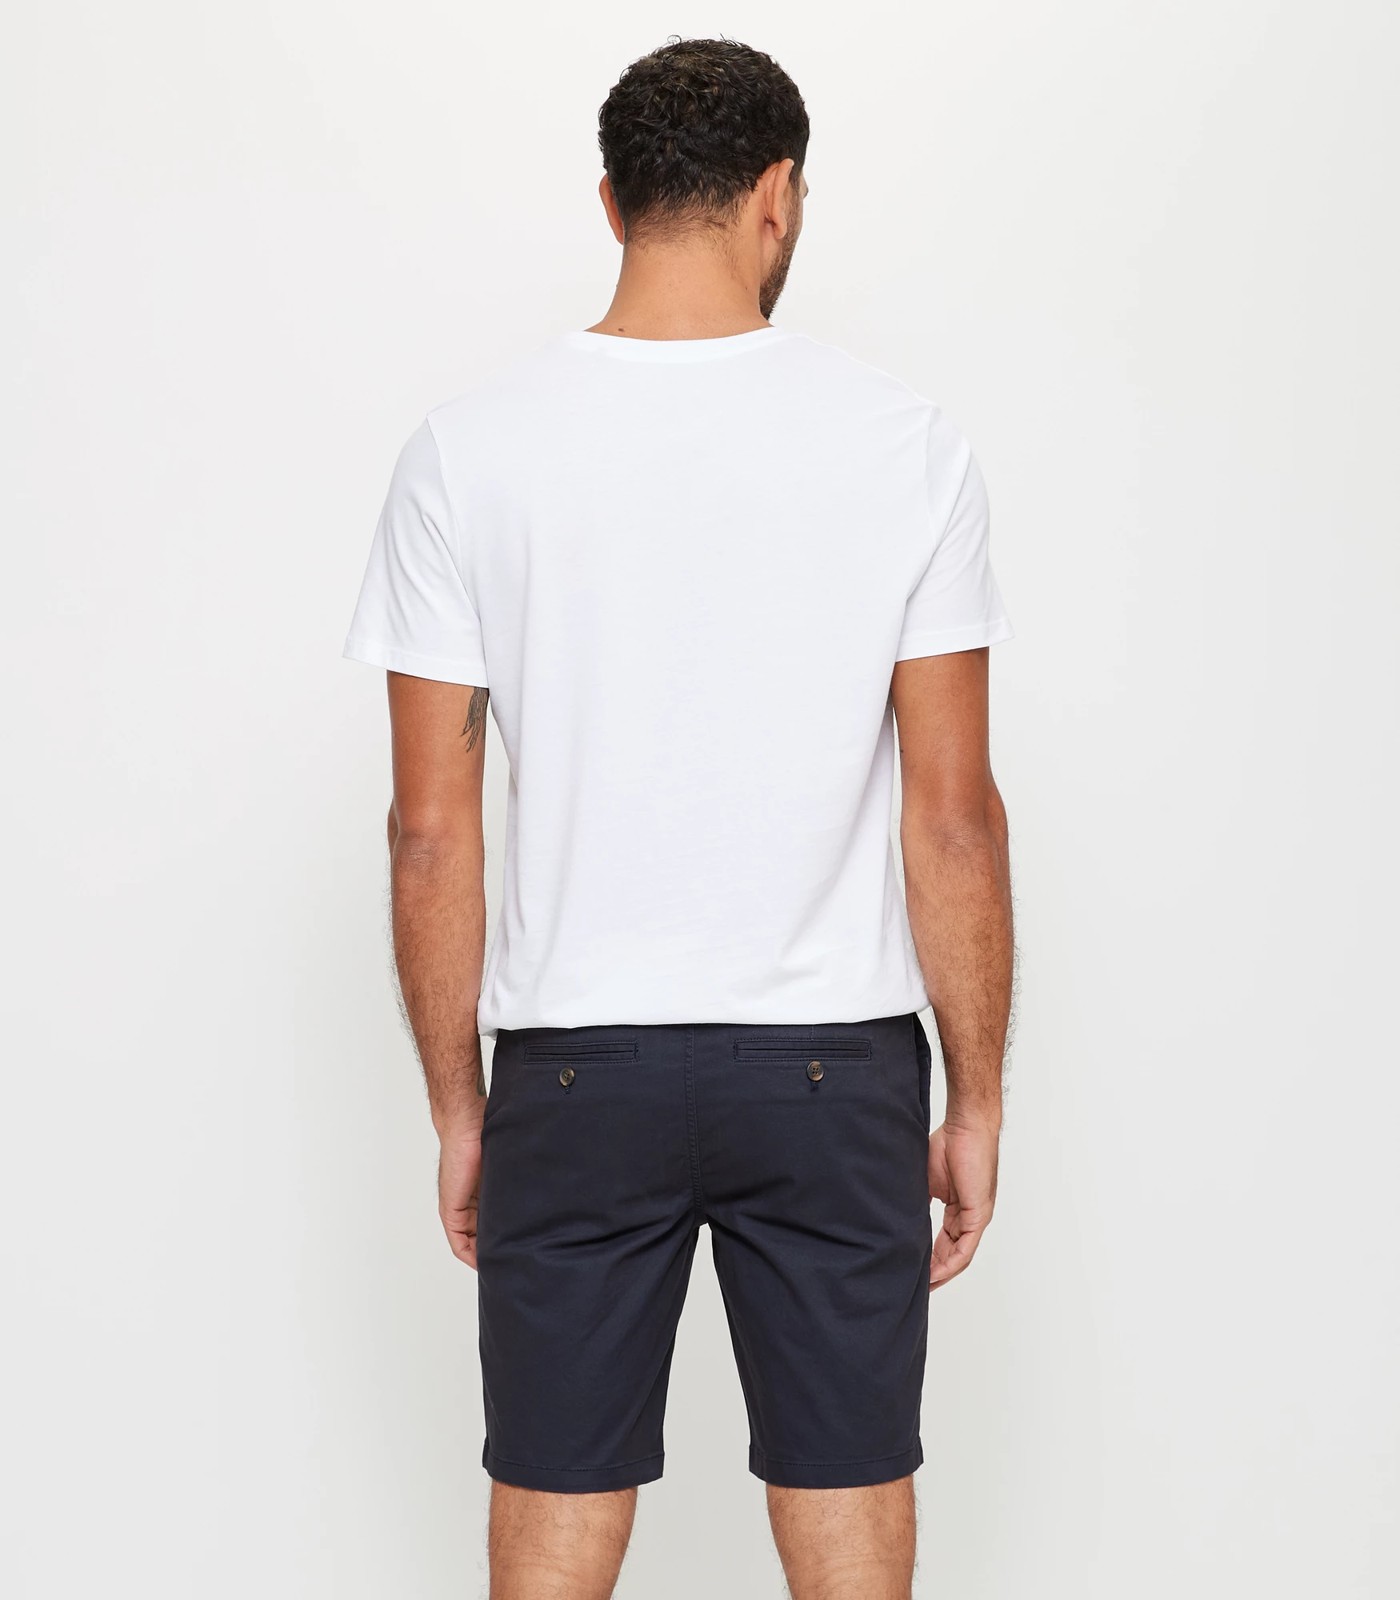 Slim Stretch Chino Shorts - Navy Blue | Target Australia